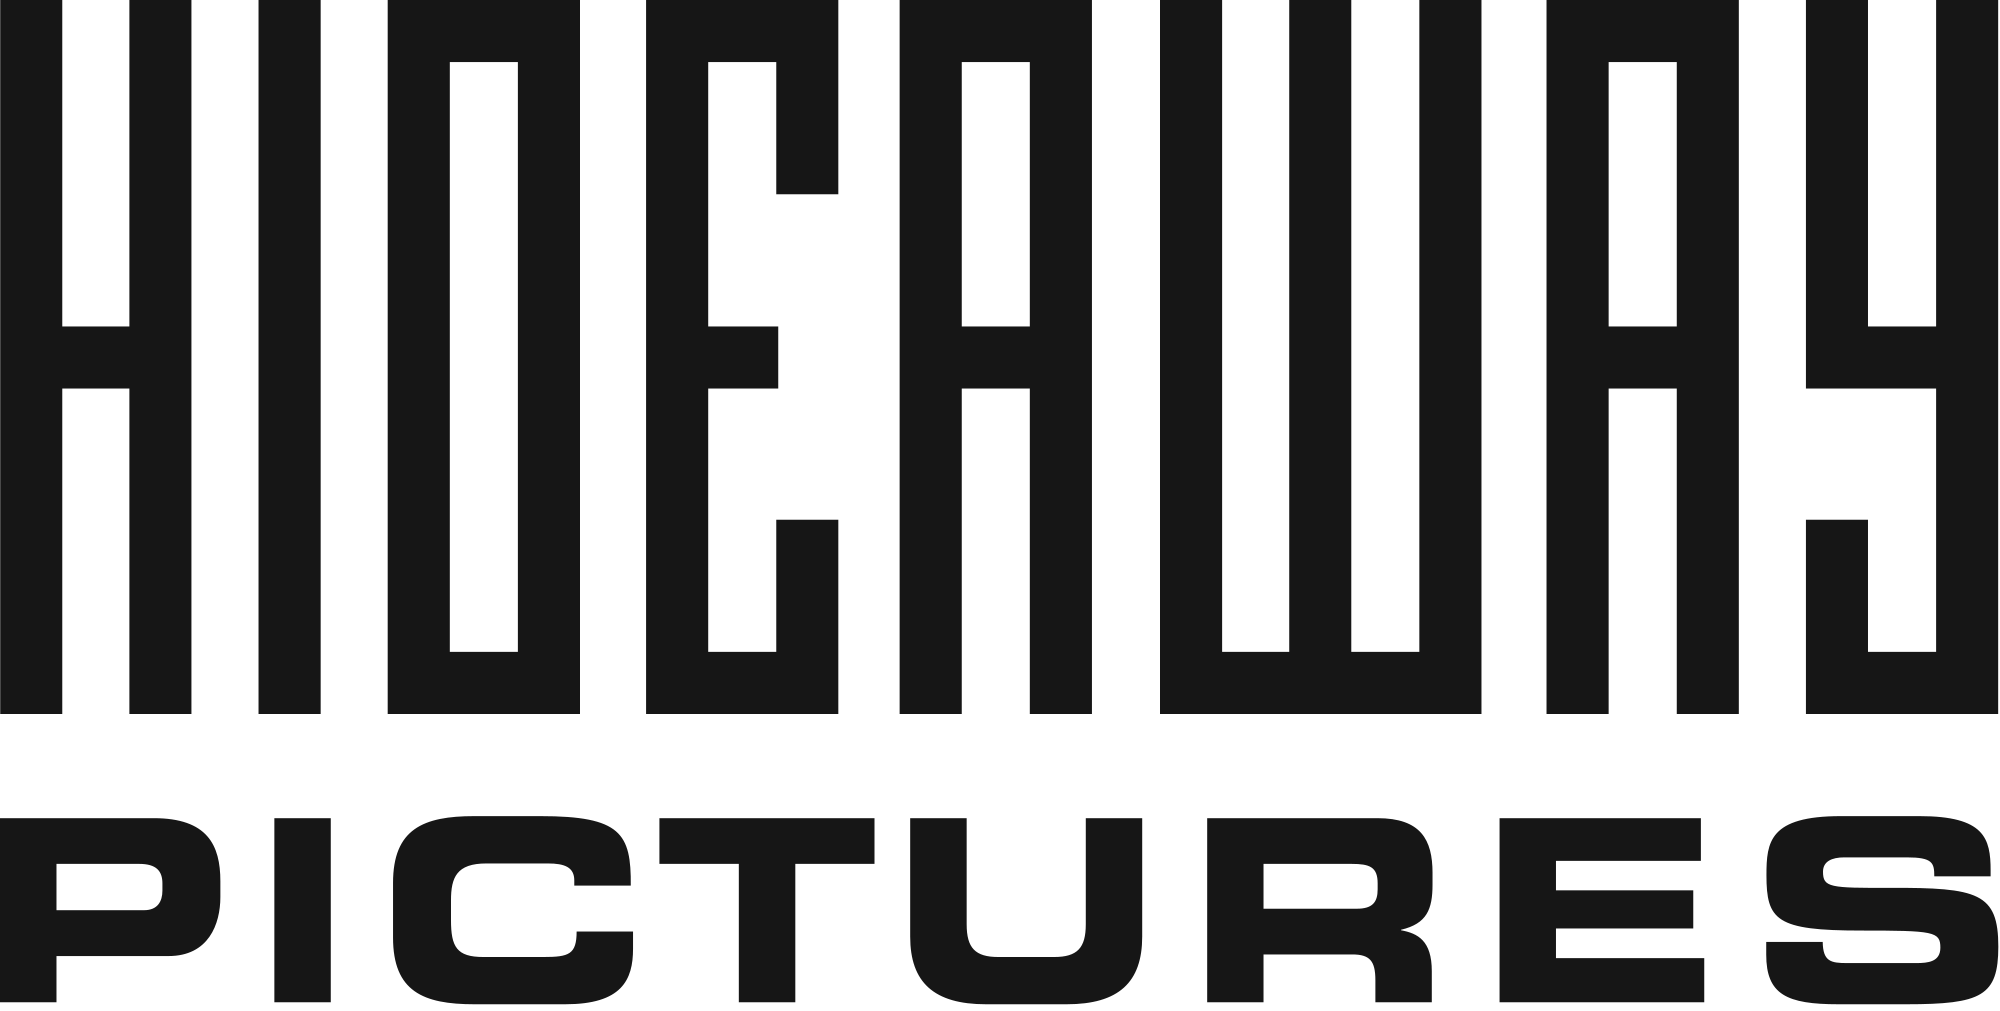 Hideaway Pictures Logo